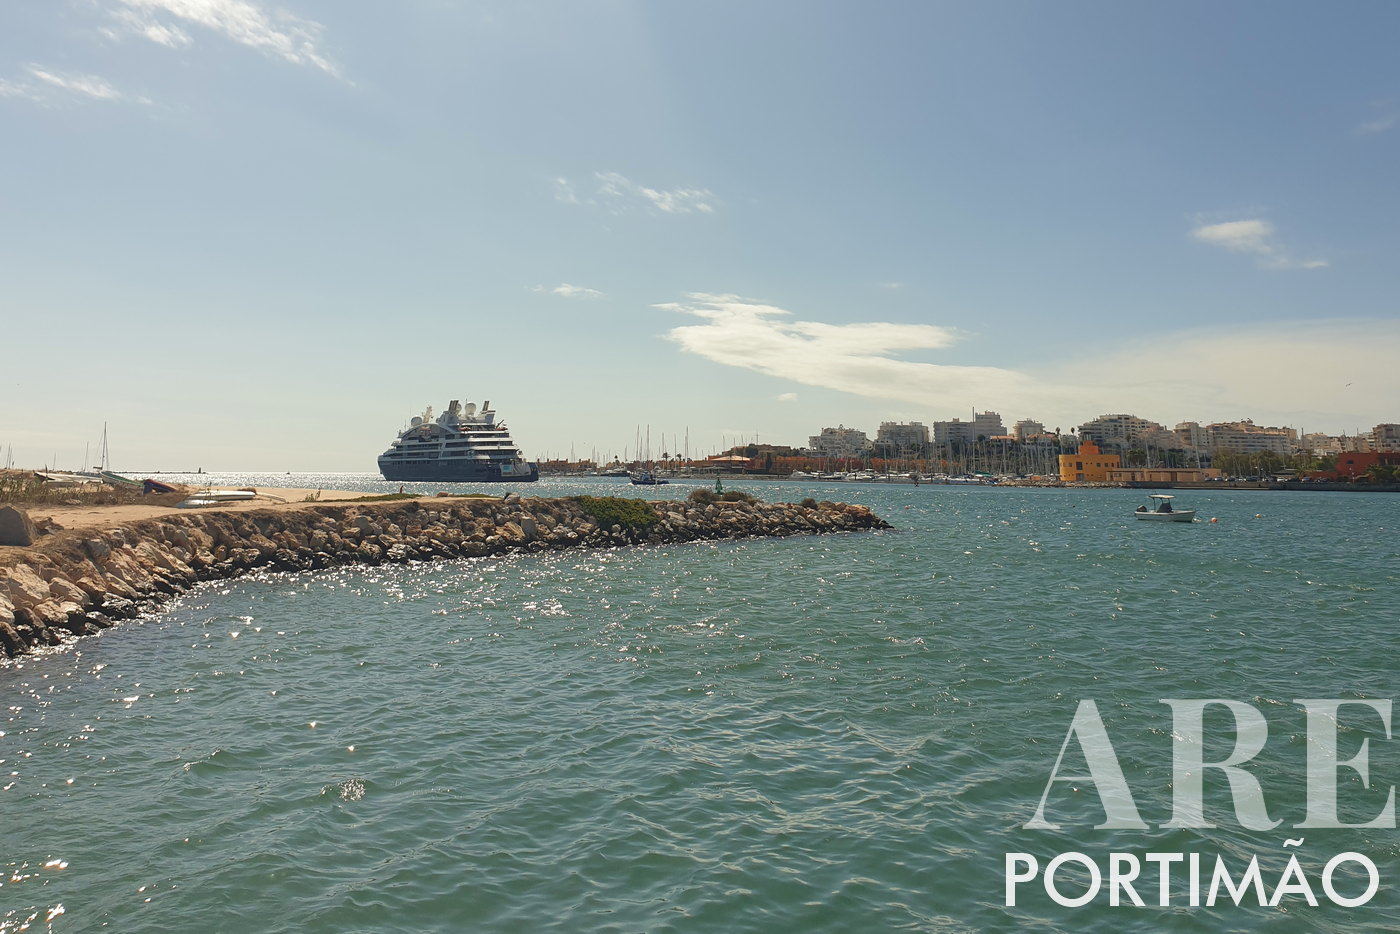 Portimão Marina with departing cruise ship